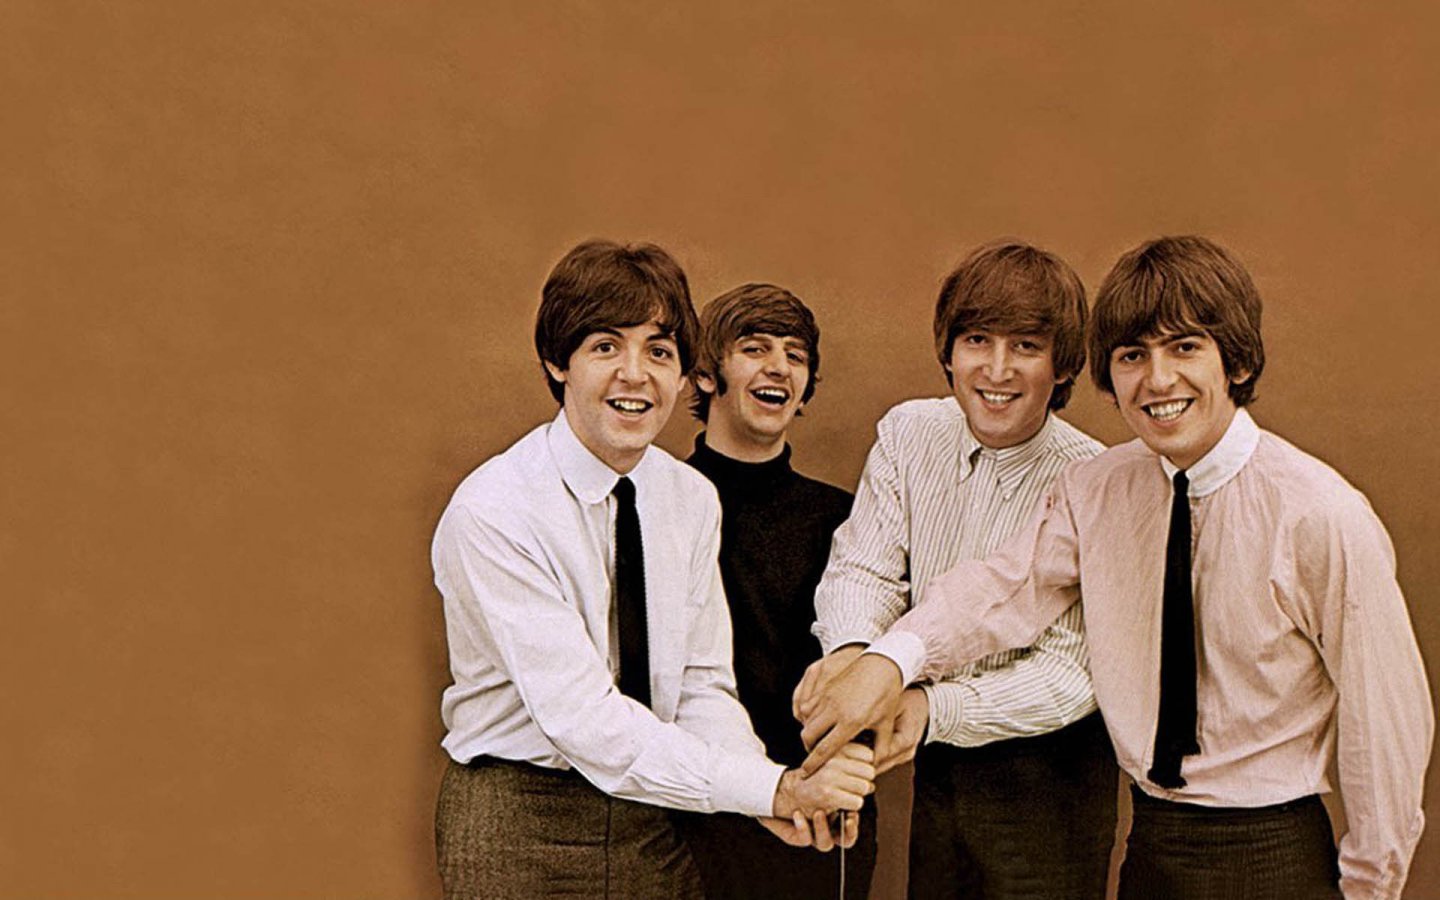 The Beatles Desktop Wallpaper